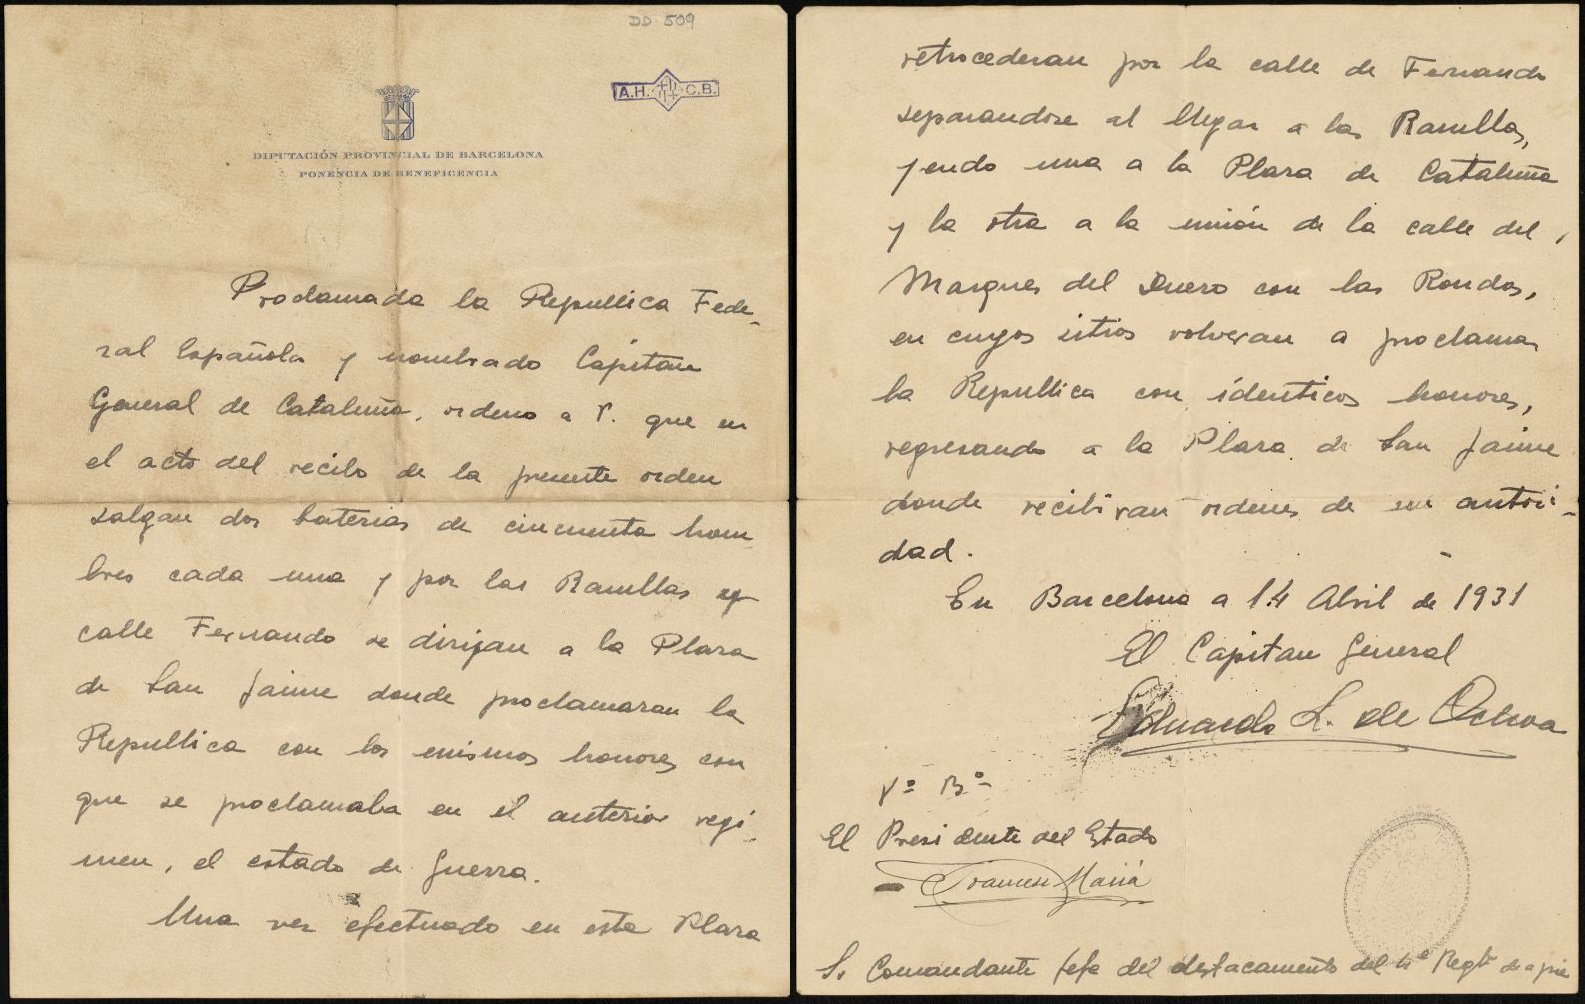 Documento autógrafo del General López Ochoa en el que, una vez nombrado Capitán General de Cataluña, ordena que dos baterías con un total de cien hombres, se dirijan a la Plaza de Sant Jaume